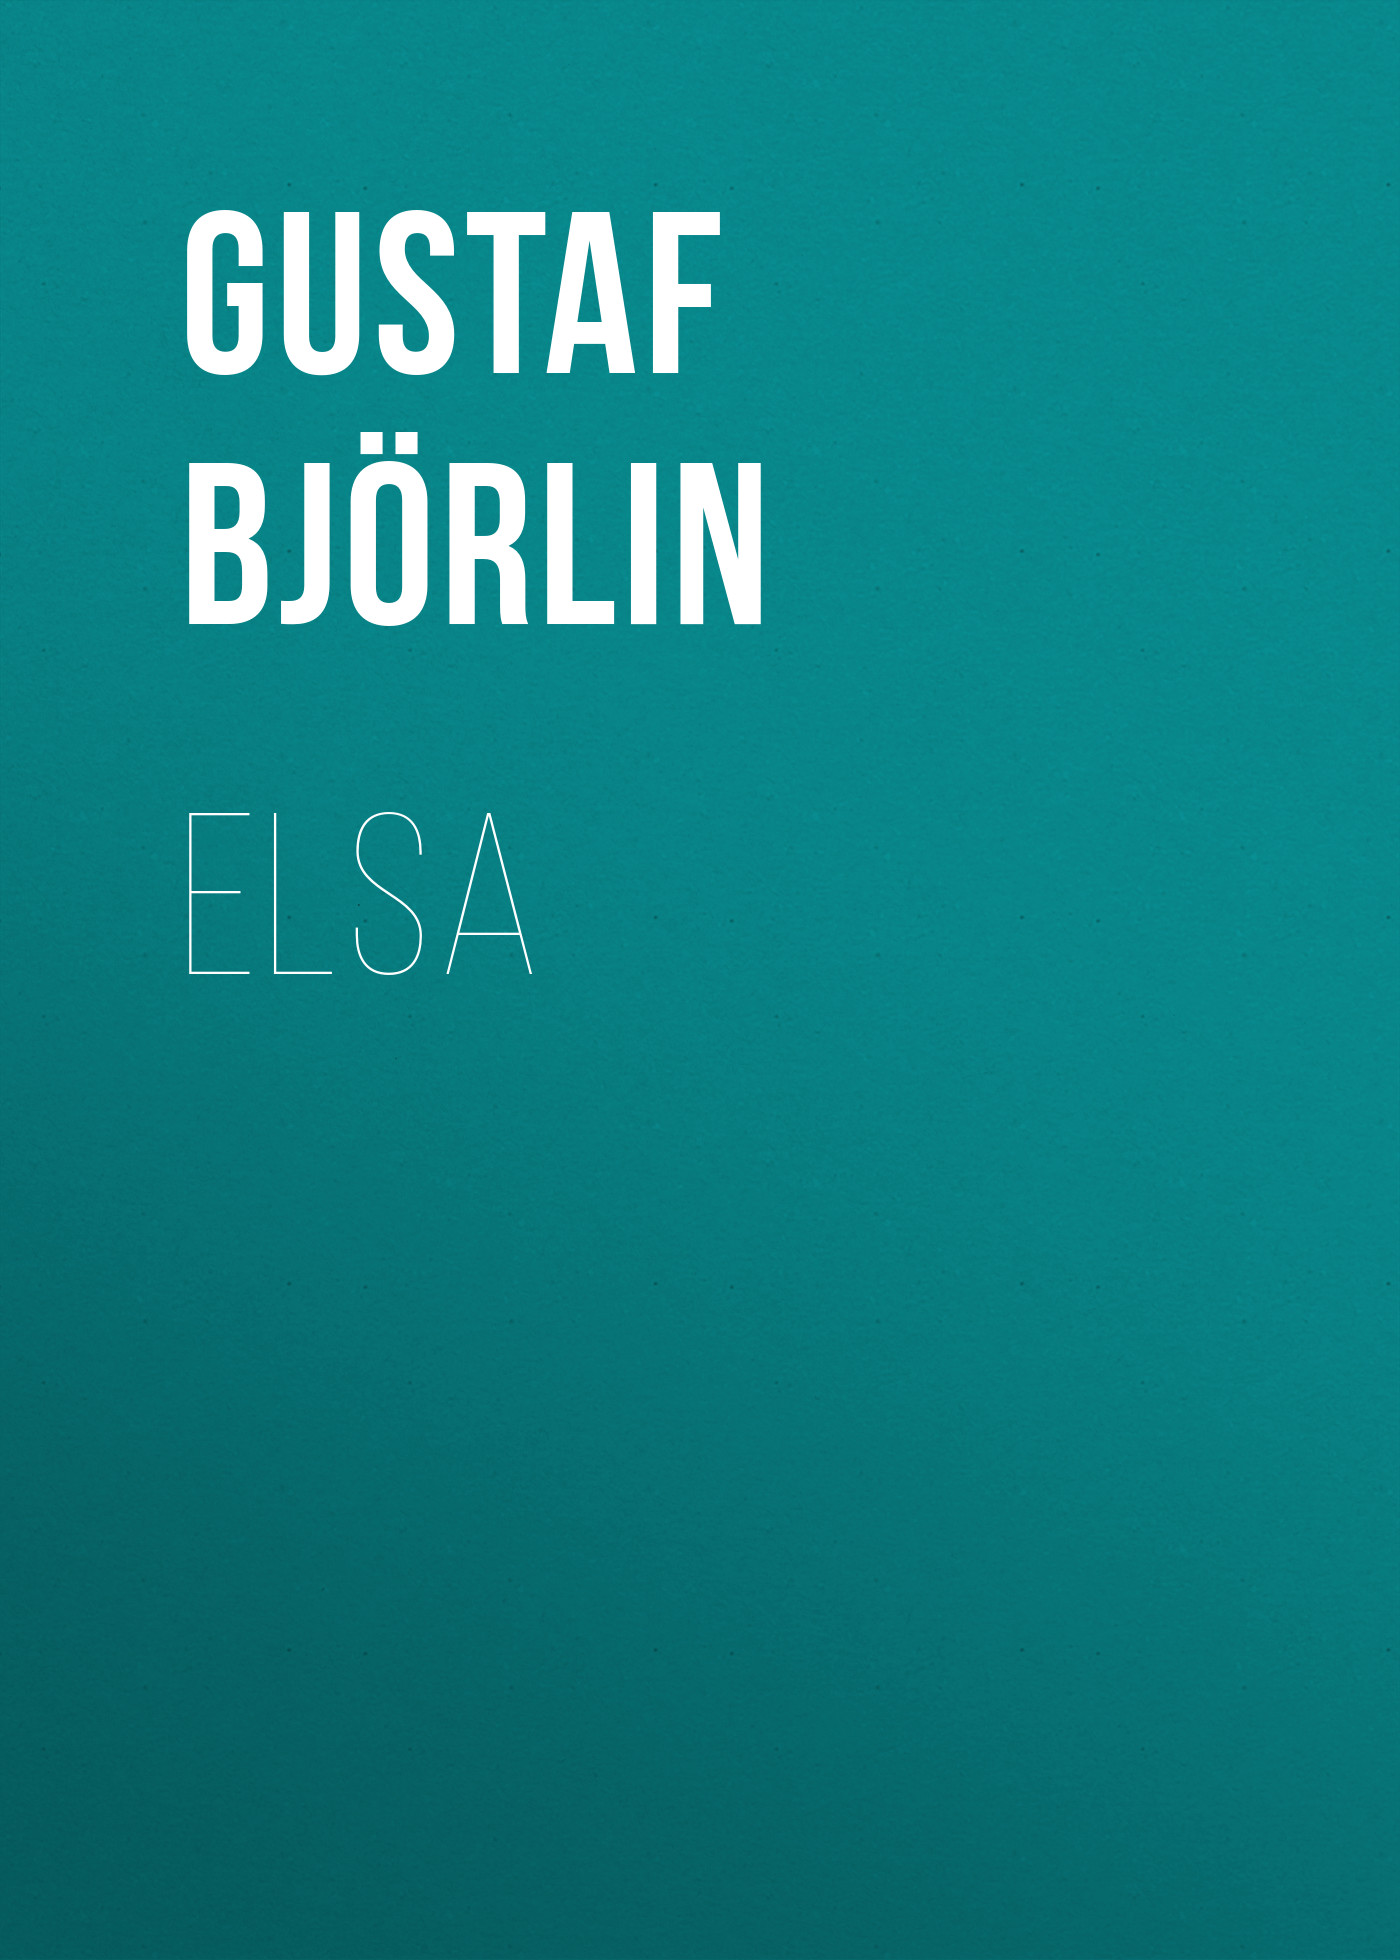 Книга Elsa из серии , созданная Gustaf Björlin, может относится к жанру Зарубежная старинная литература, Зарубежная классика. Стоимость электронной книги Elsa с идентификатором 24174532 составляет 0 руб.